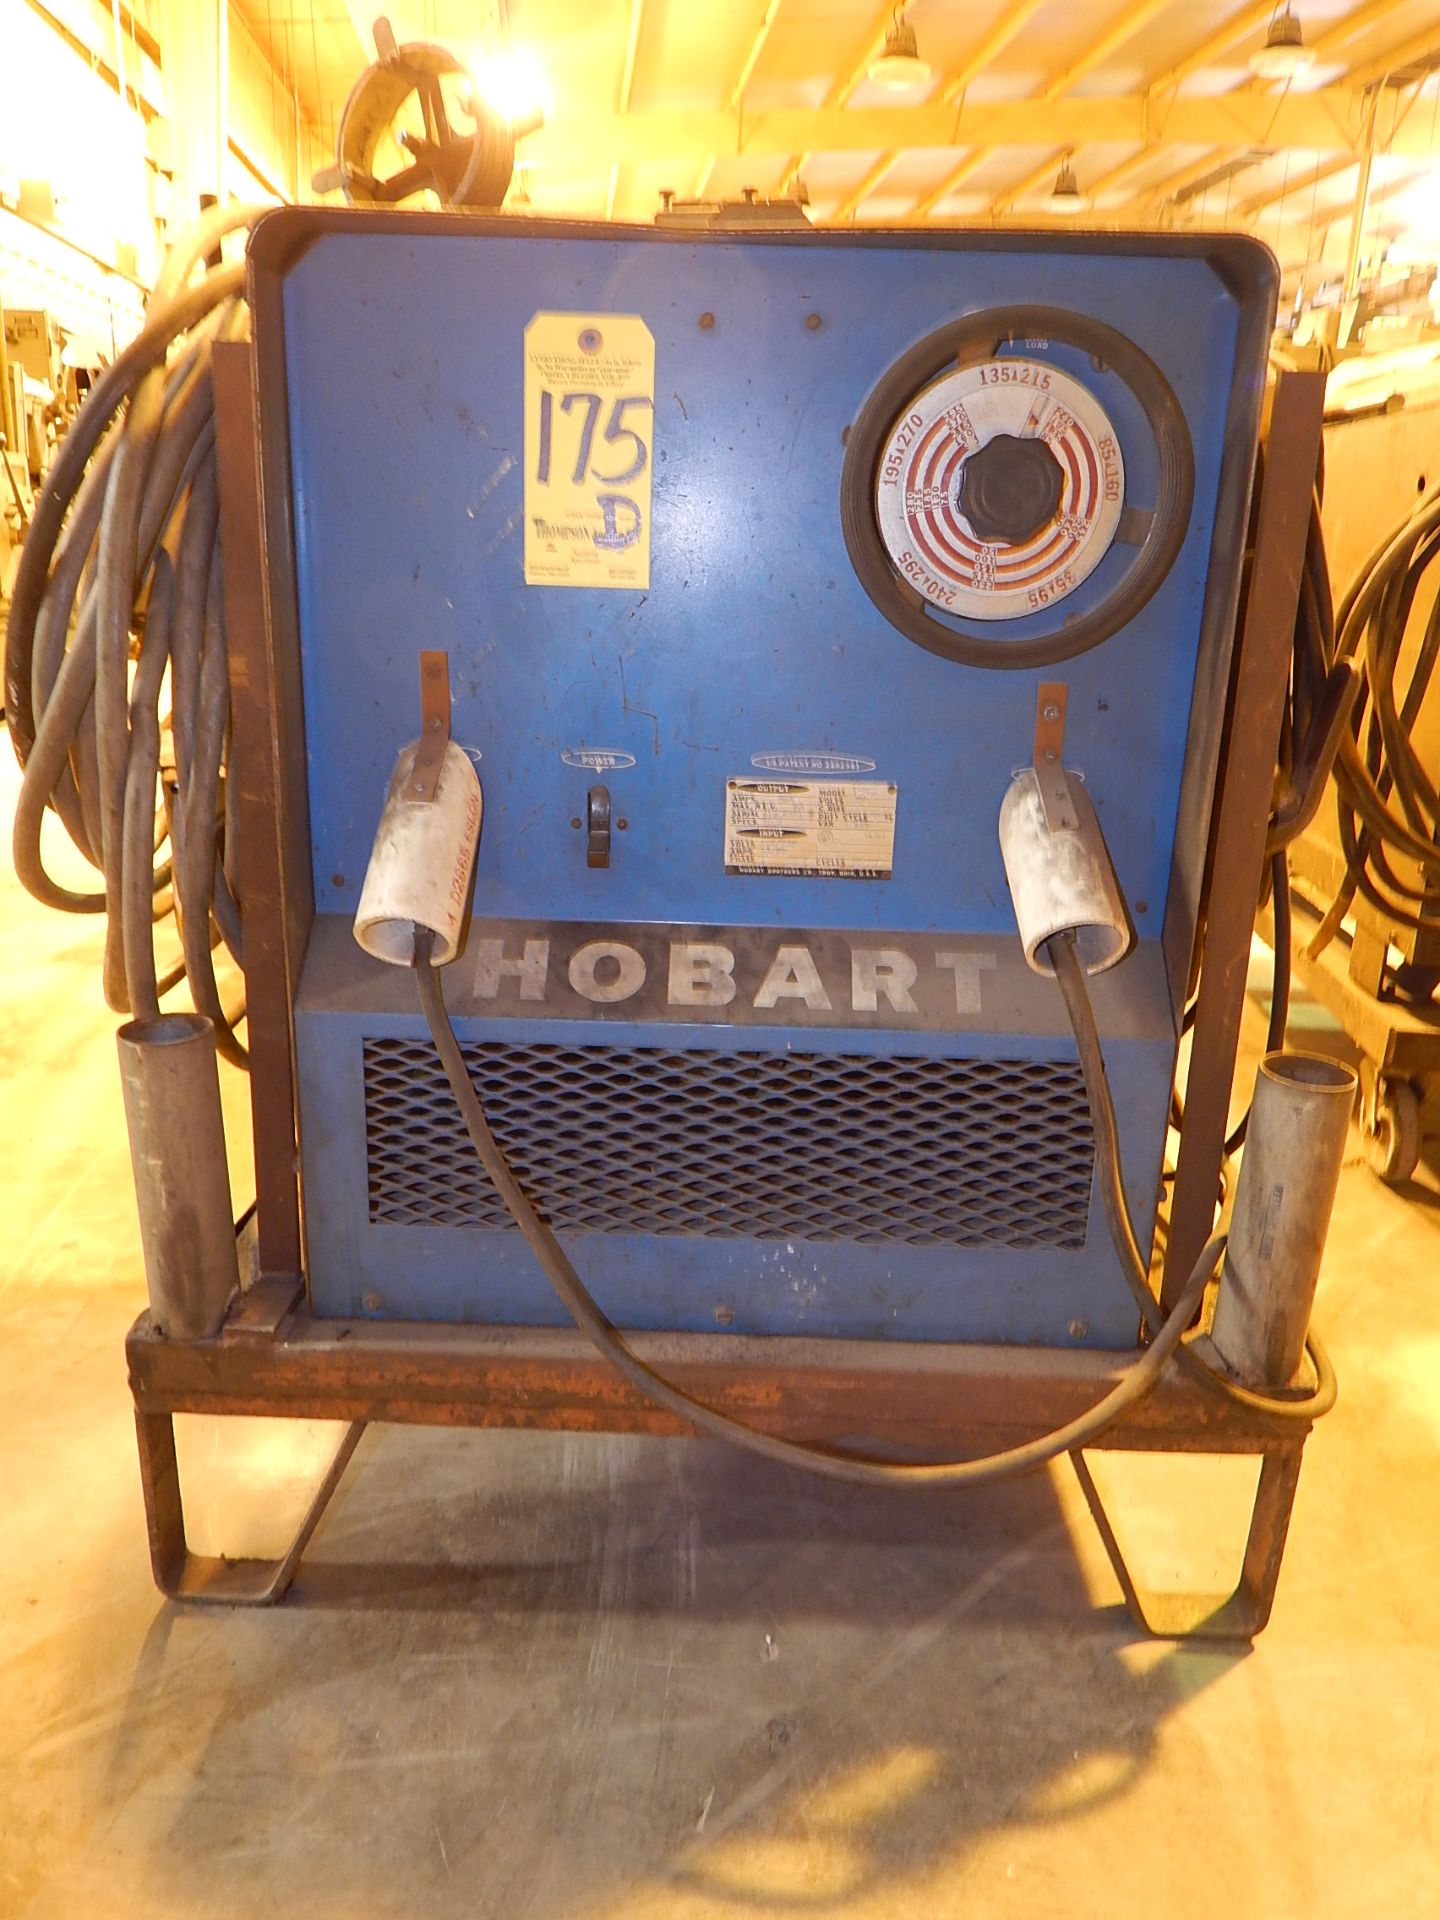 Hobart Model I-295 Arc Welder, SN 8TR-9351, 208/230 volt, 1 phase